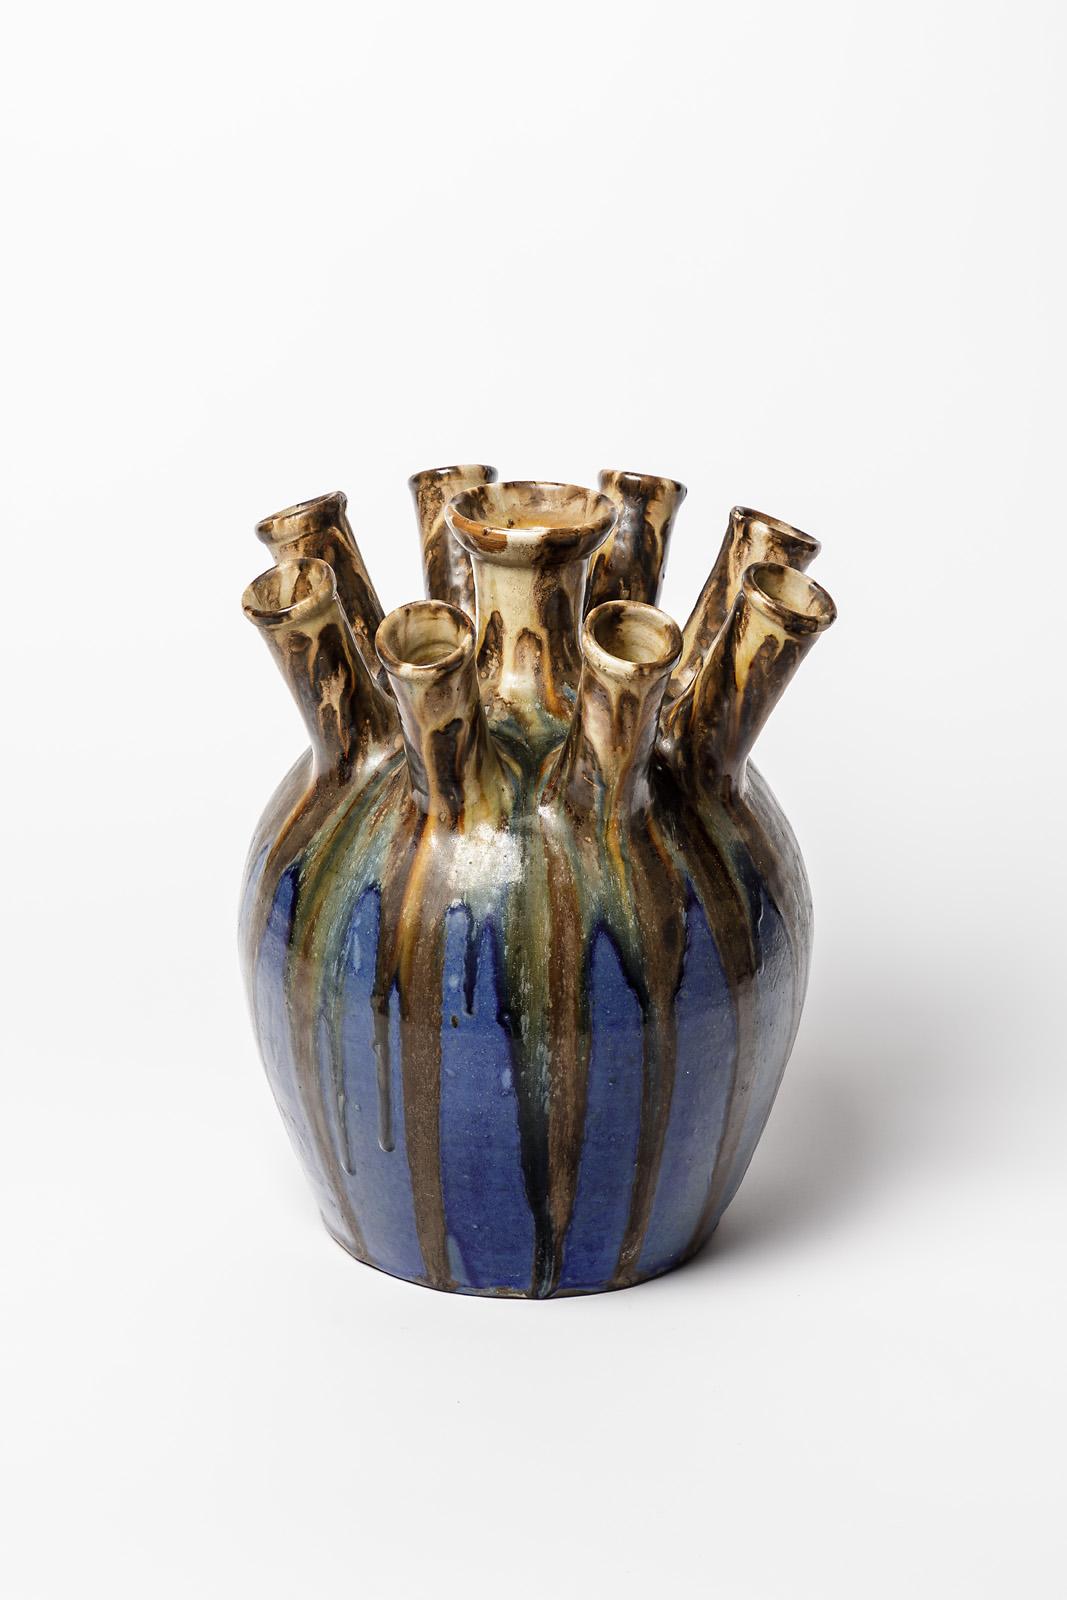 French Joseph Talbot La Borne circa 1930 20th Century Blue and Brown Ceramic Vase For Sale